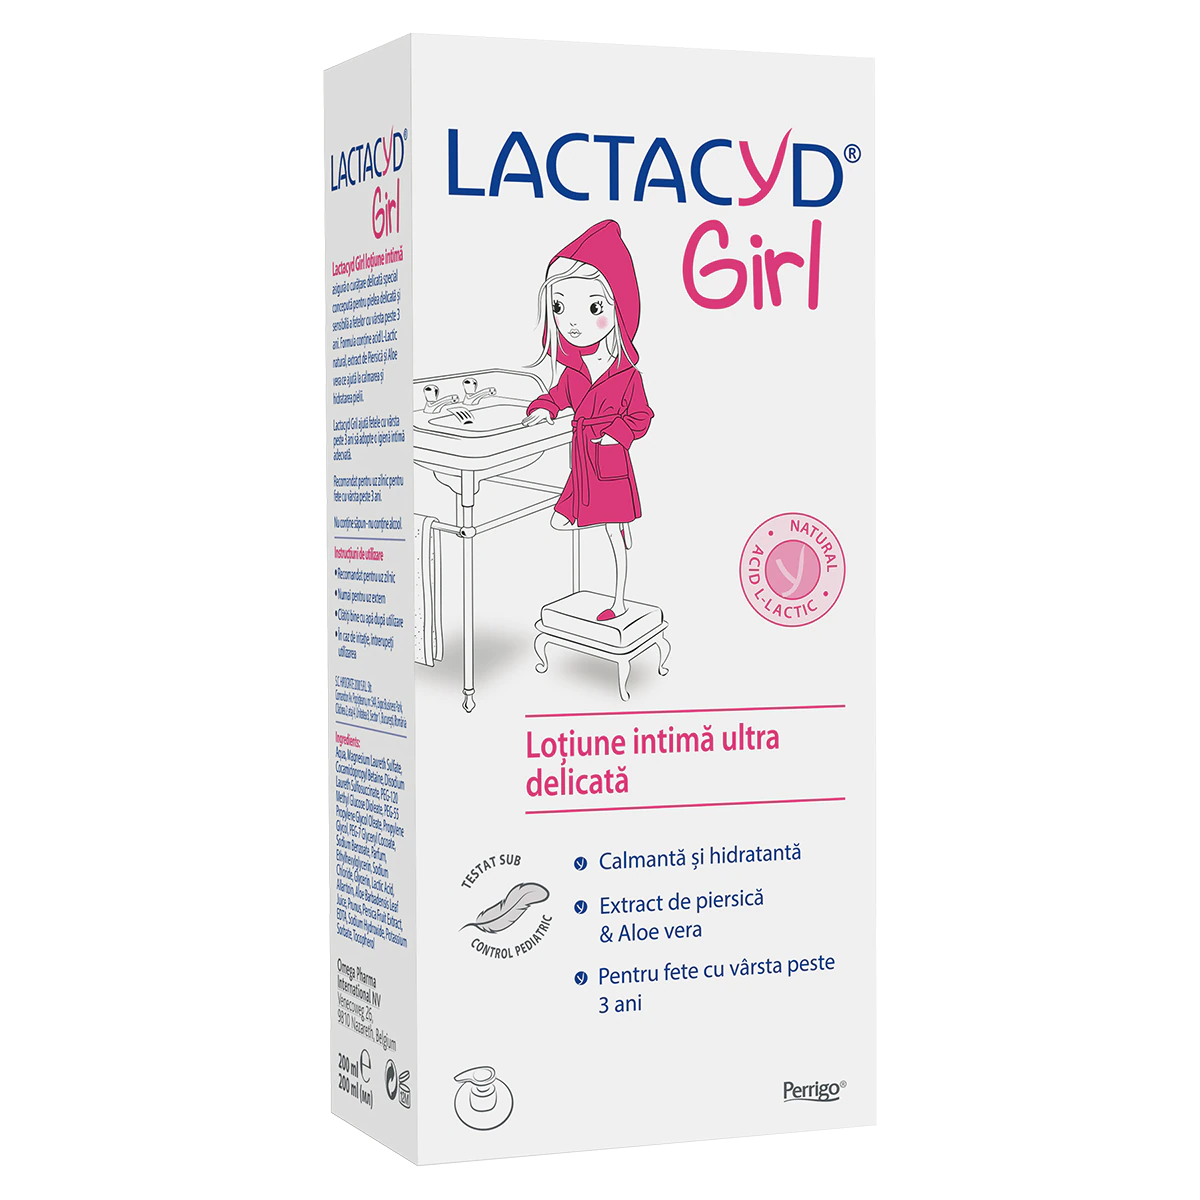 Produse de igiena - Lactacyd girl lotiune intima ultra delicata pentru fete + 3 ani x 200 ml, medik-on.ro